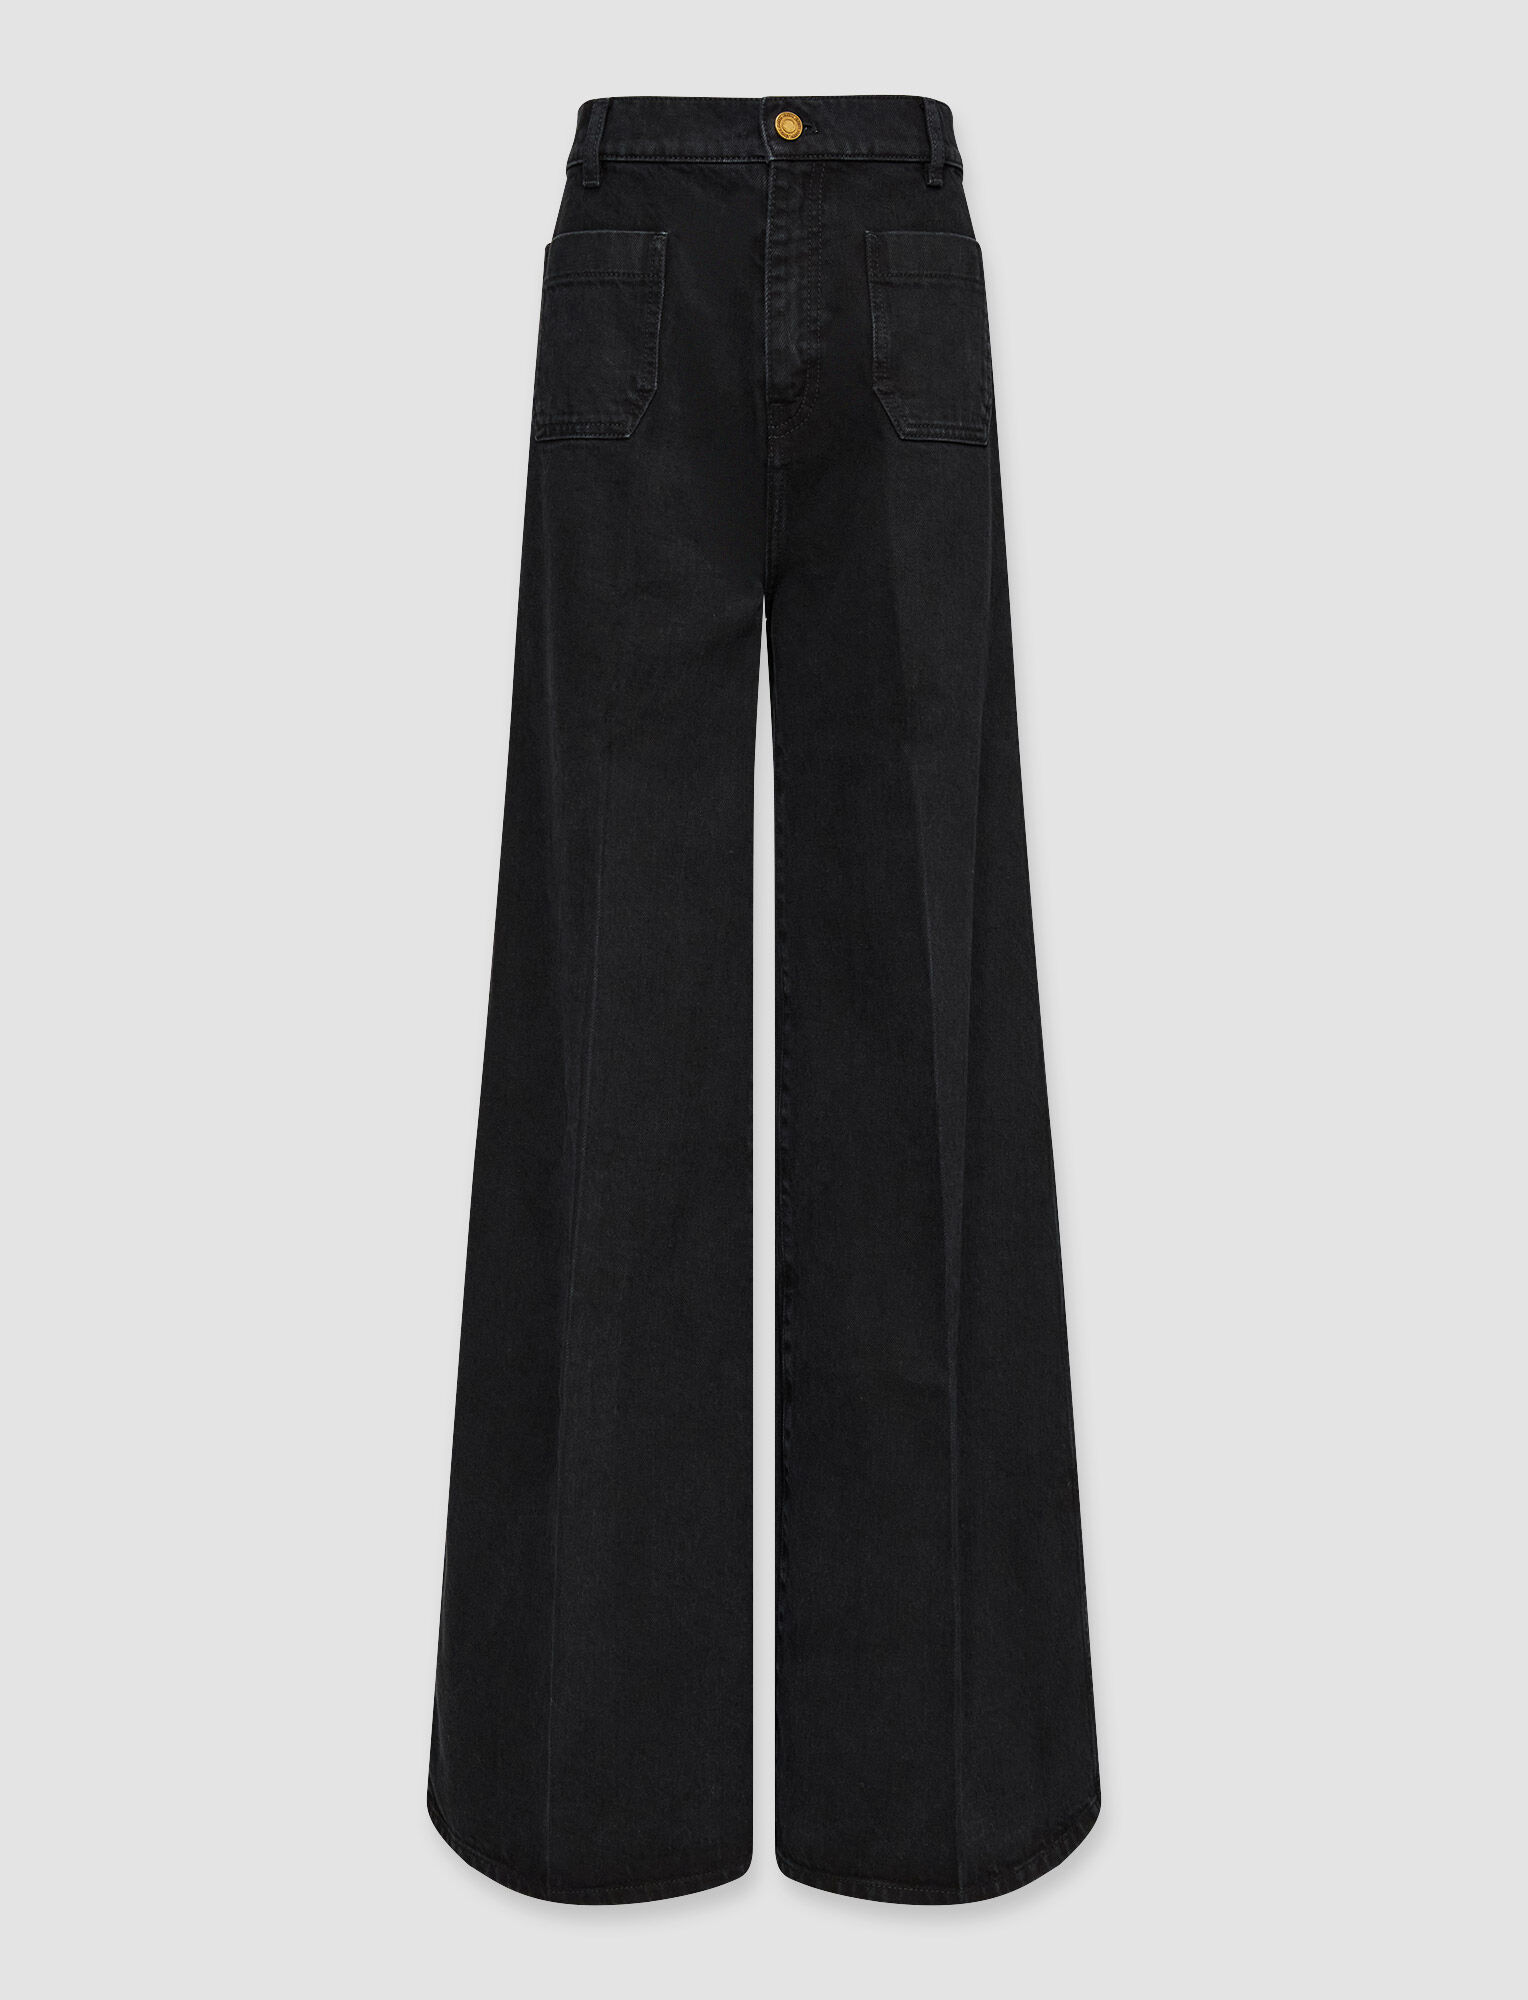 Joseph, Denim Brompton Trousers, in Black